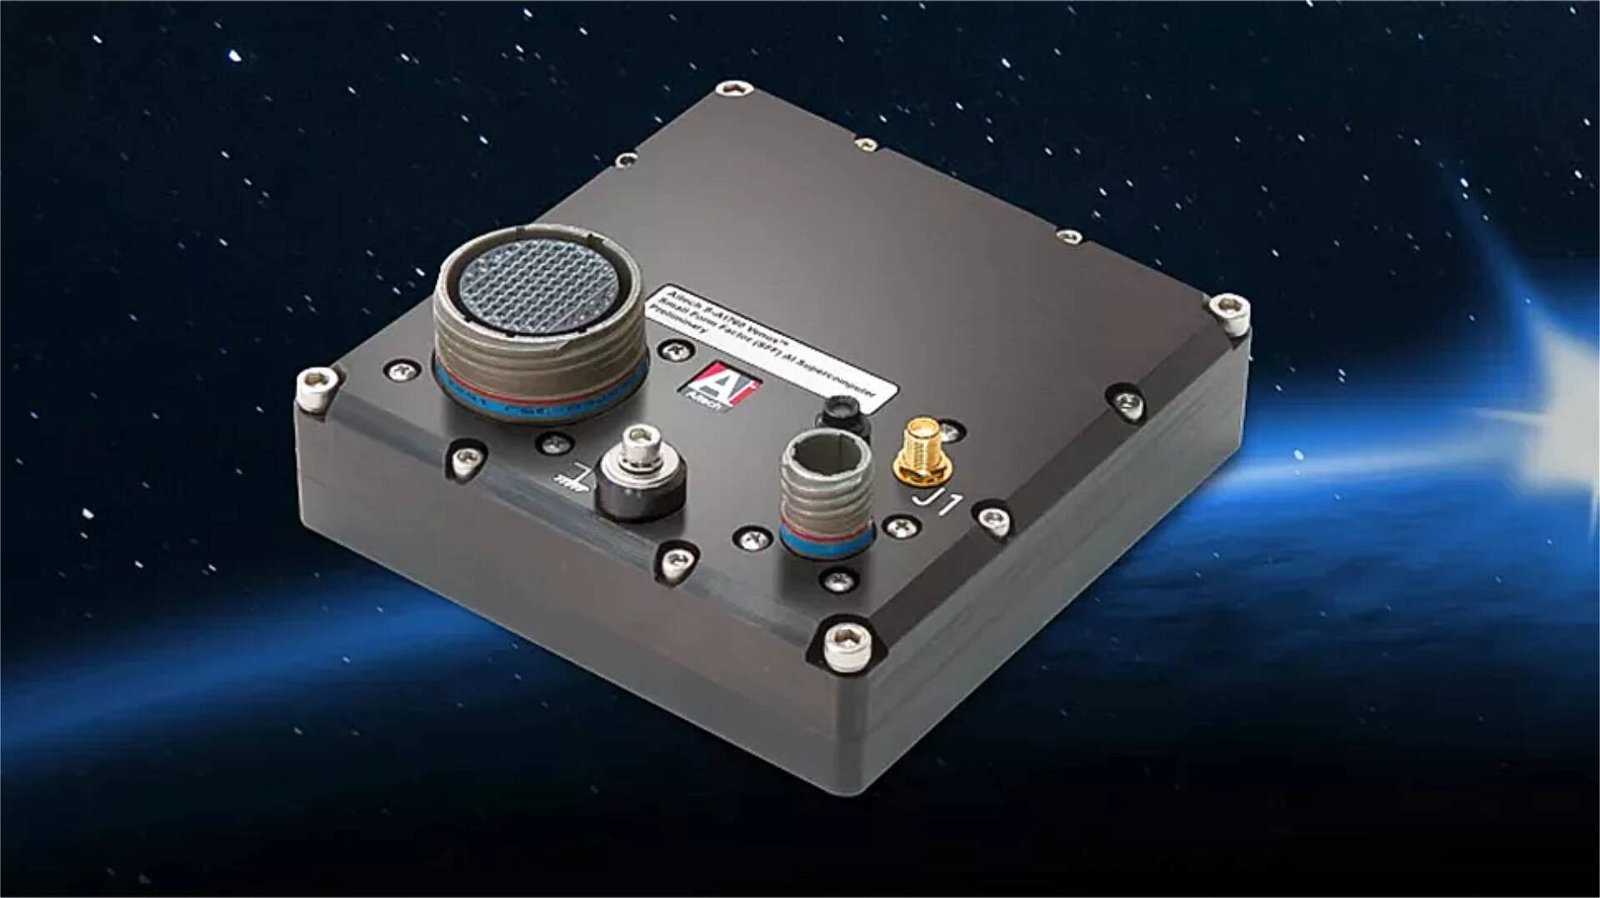 Immagine di NVIDIA, il modulo Jetson è pronto per andare nello spazio